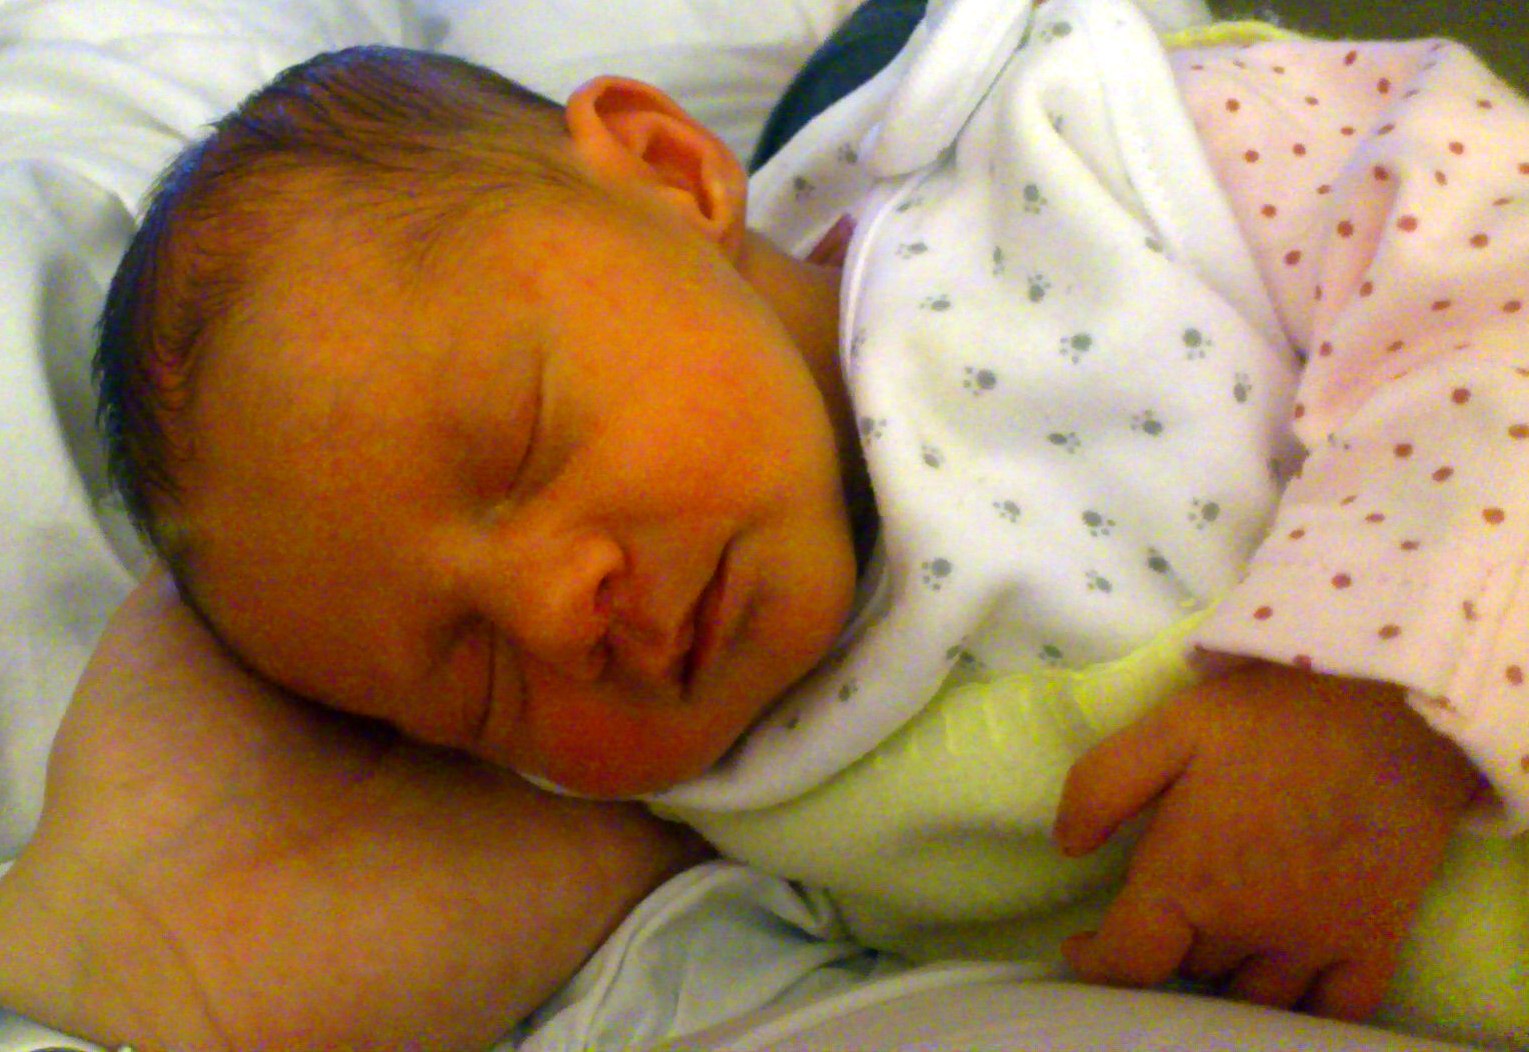 Желтуха у новорожденных: 5 симптомов, 10 причин, 3 способа лечения, профилактика